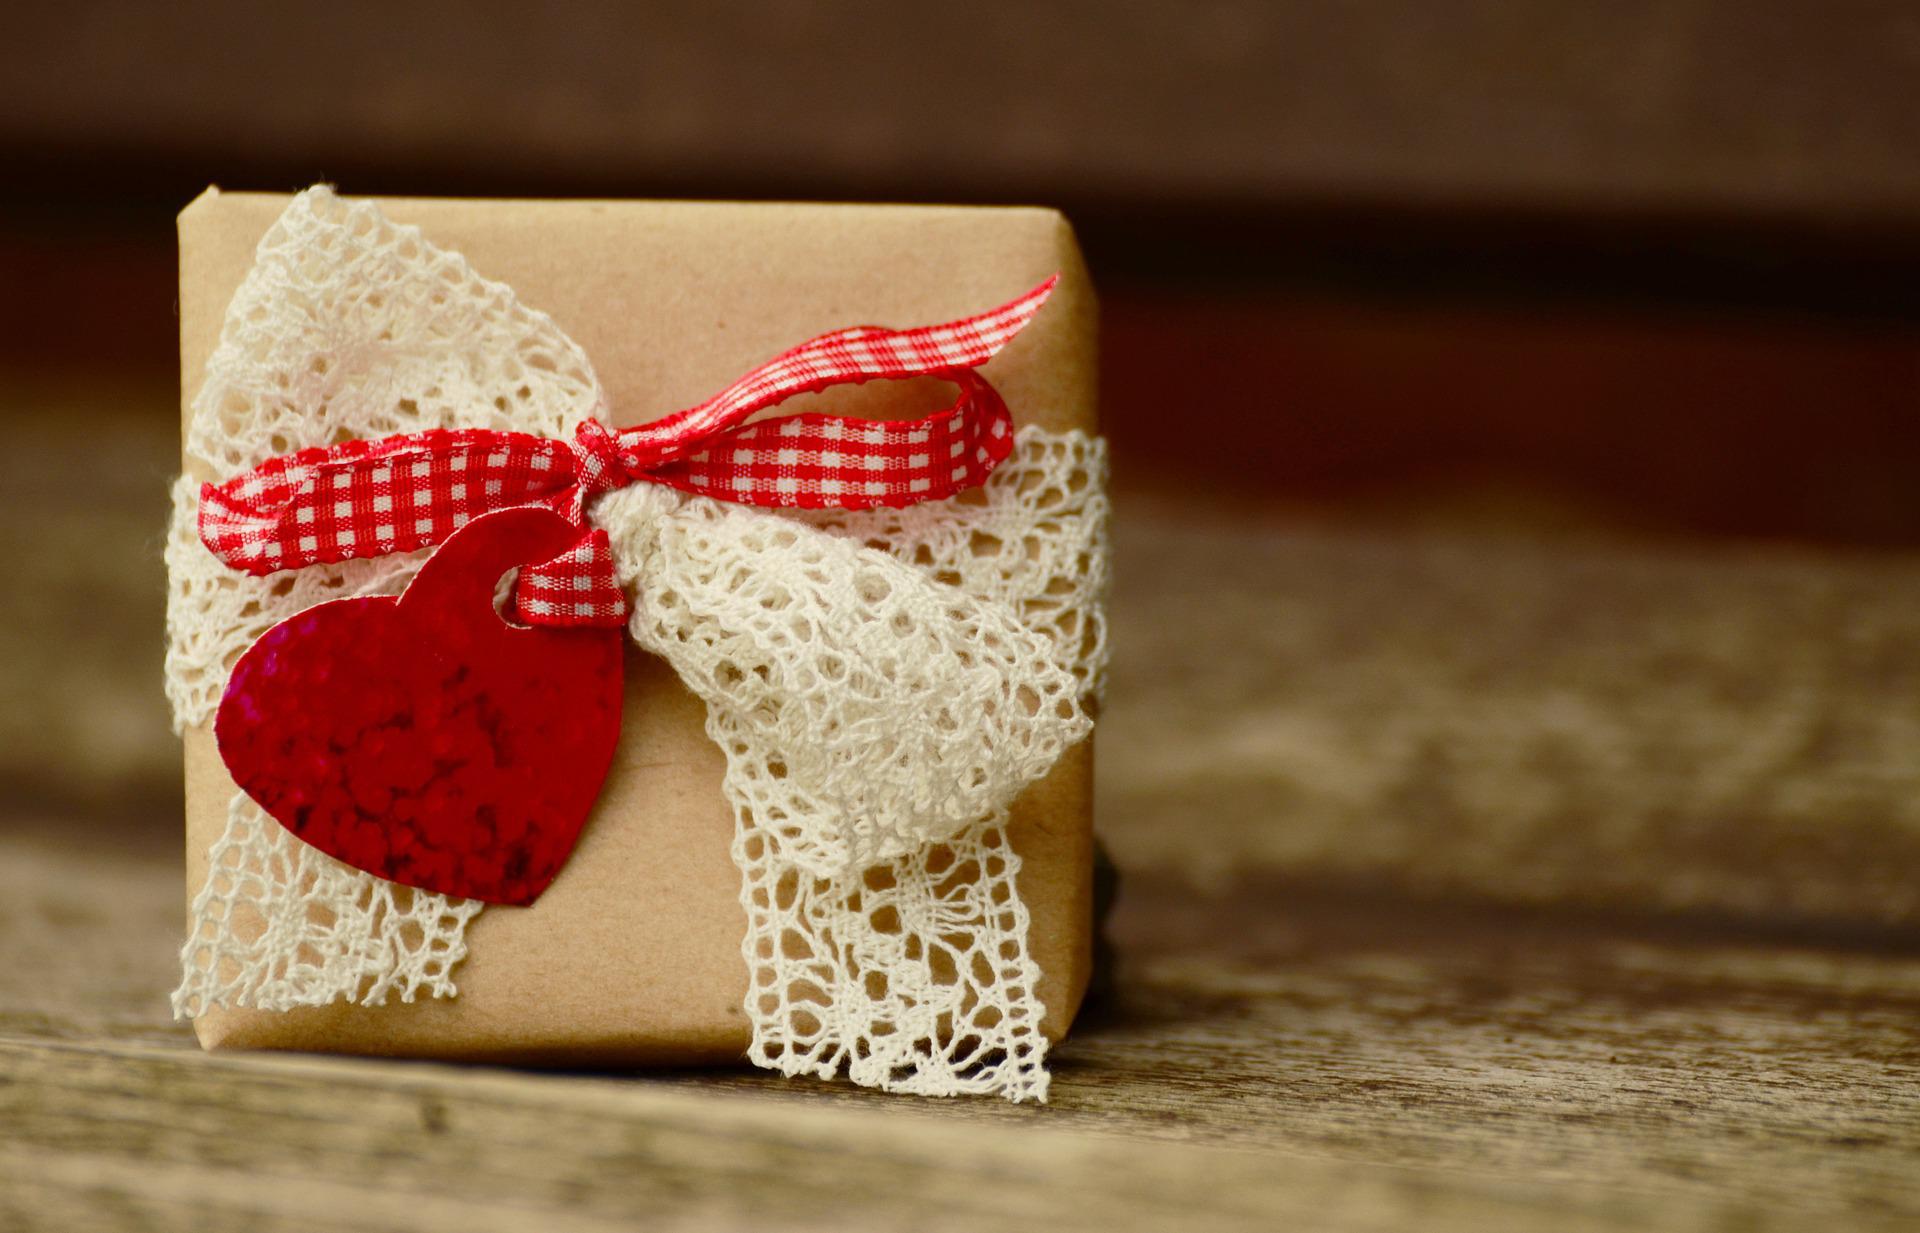 Geschenke nachhaltig Verpacken, Tipp von Beauty Club Austria, Foto: pixabay